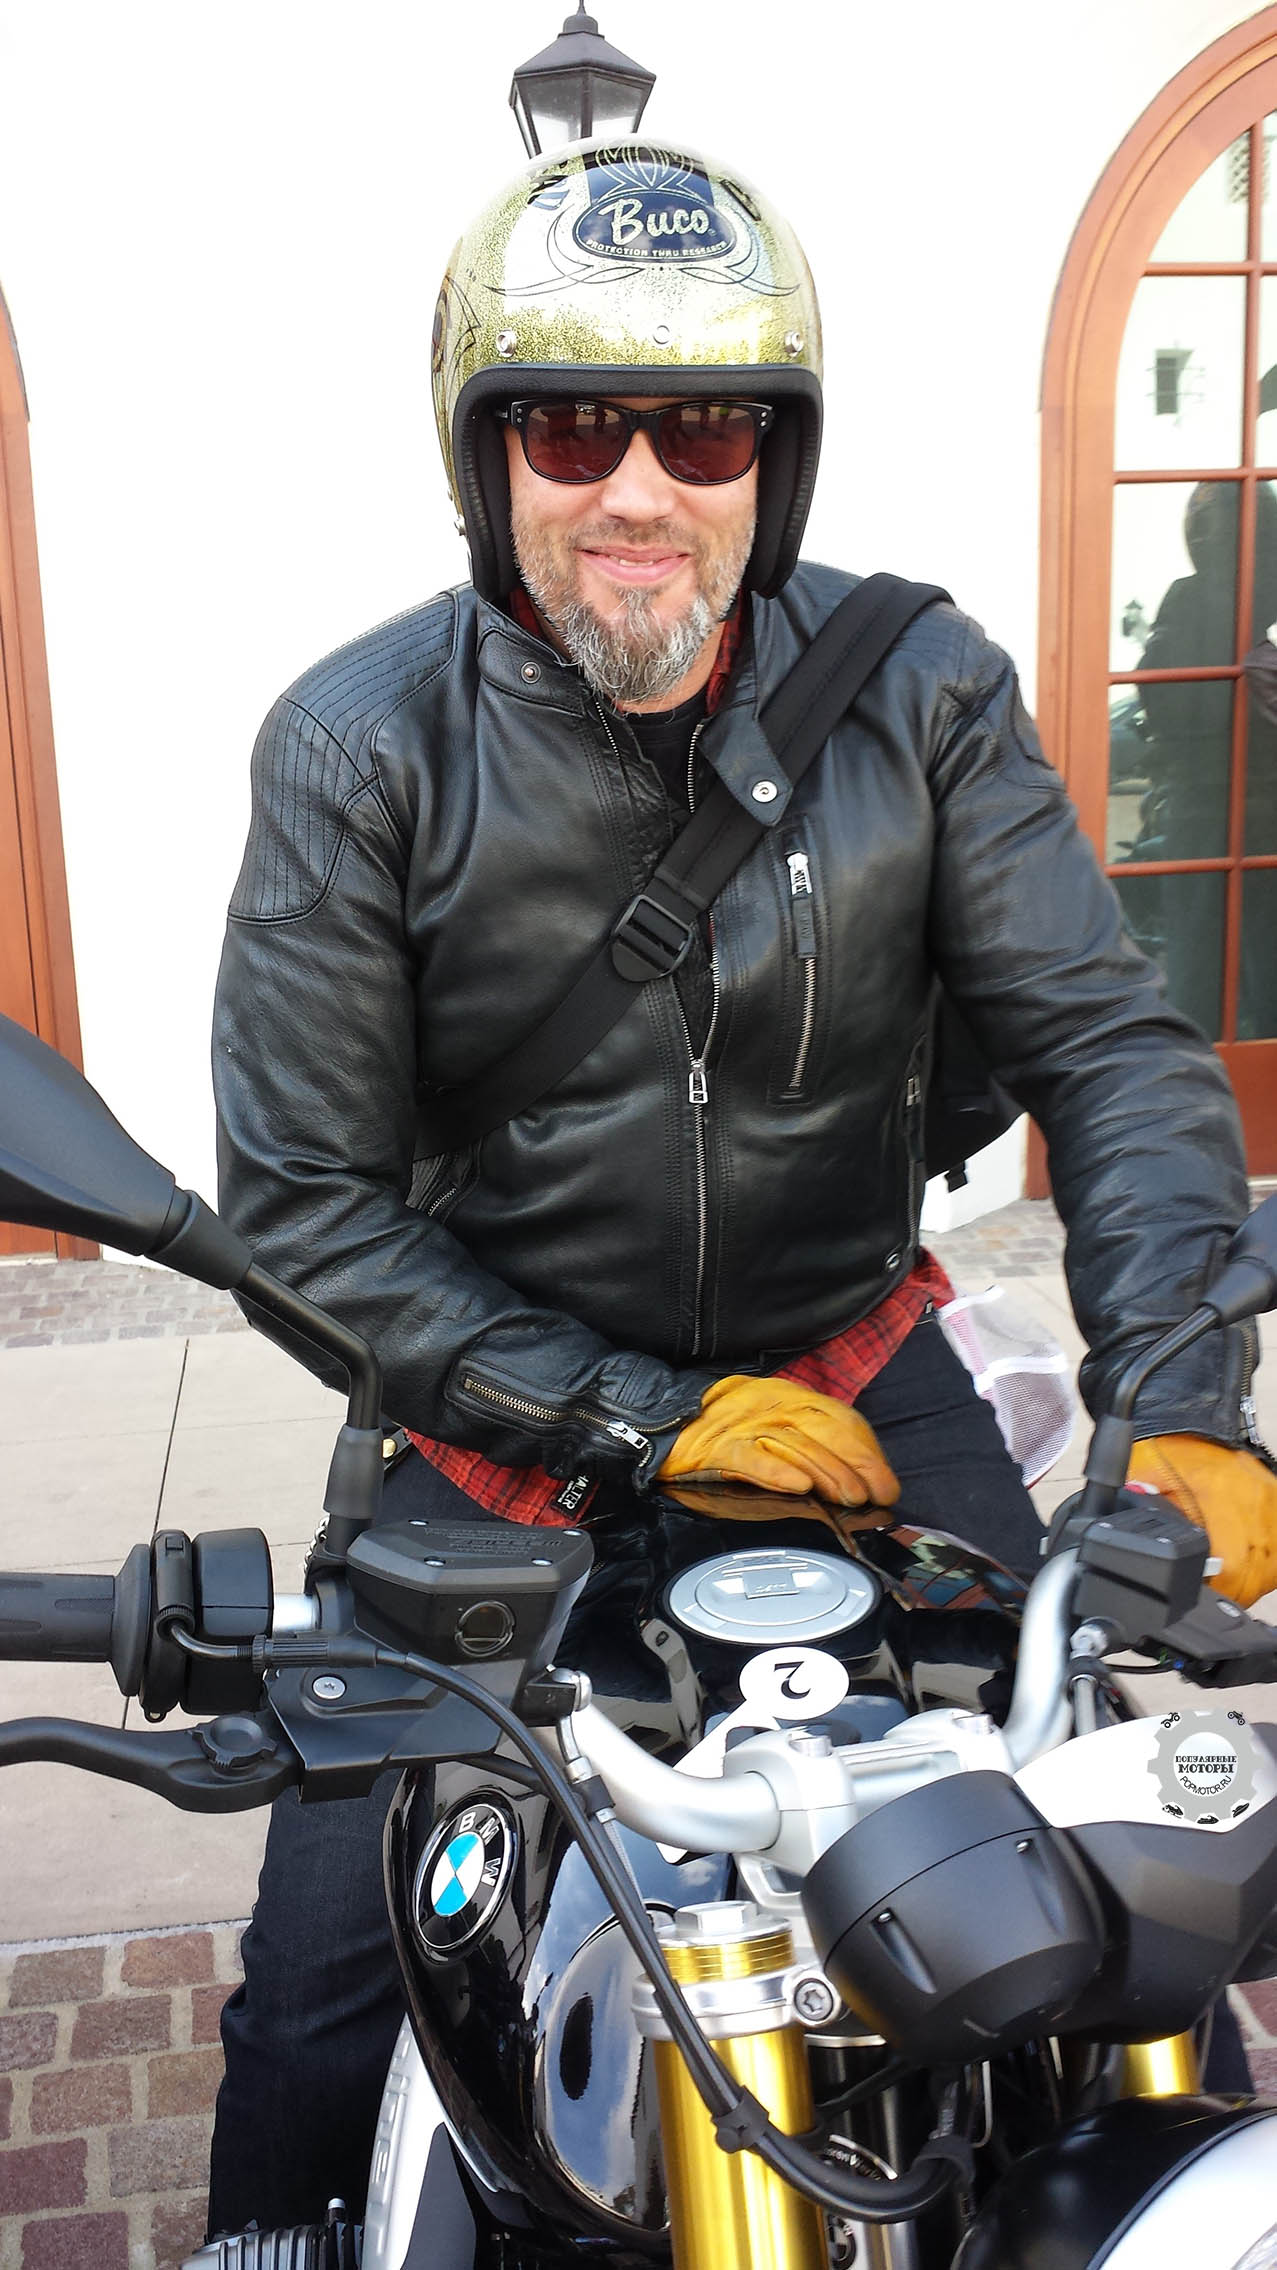 За смелый и «раздетый» дизайн nineT ответственен Ола Стенегард, о котором он говорит: «Этот мотоцикл так близок к моему сердцу, к моей личной жизни».